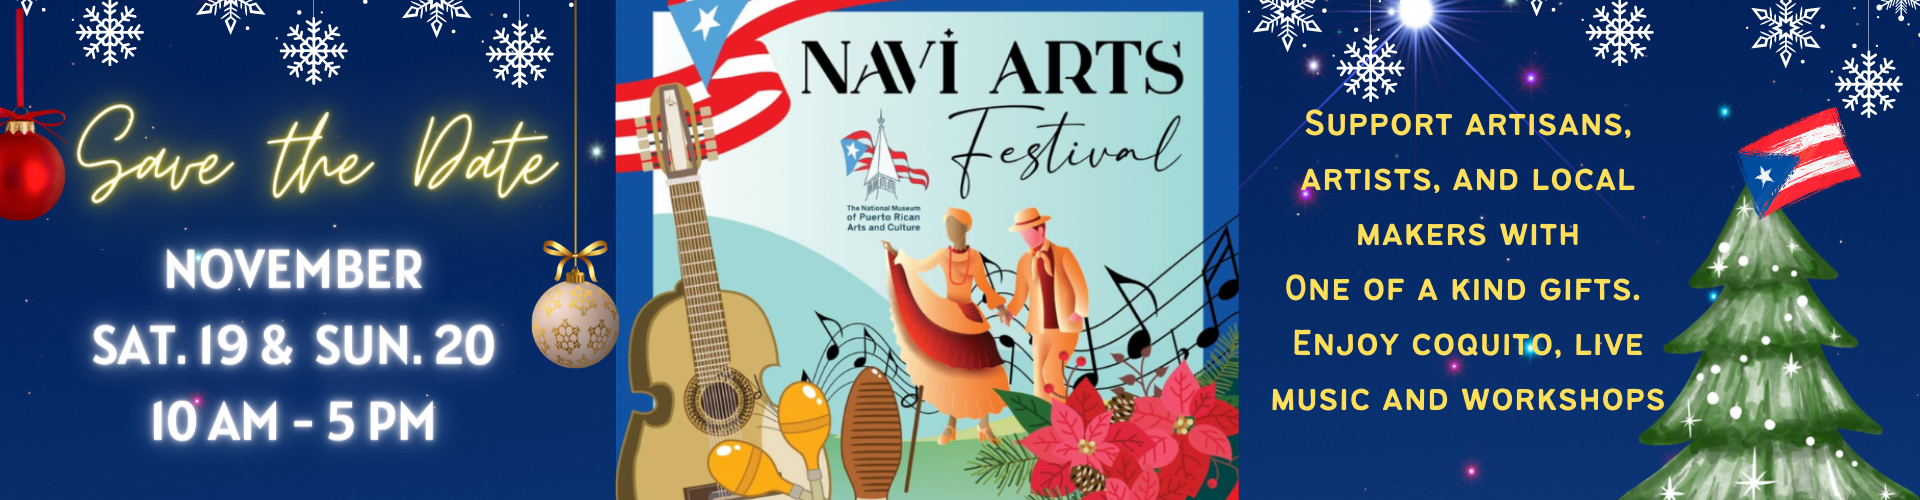 Navi Arts Banner